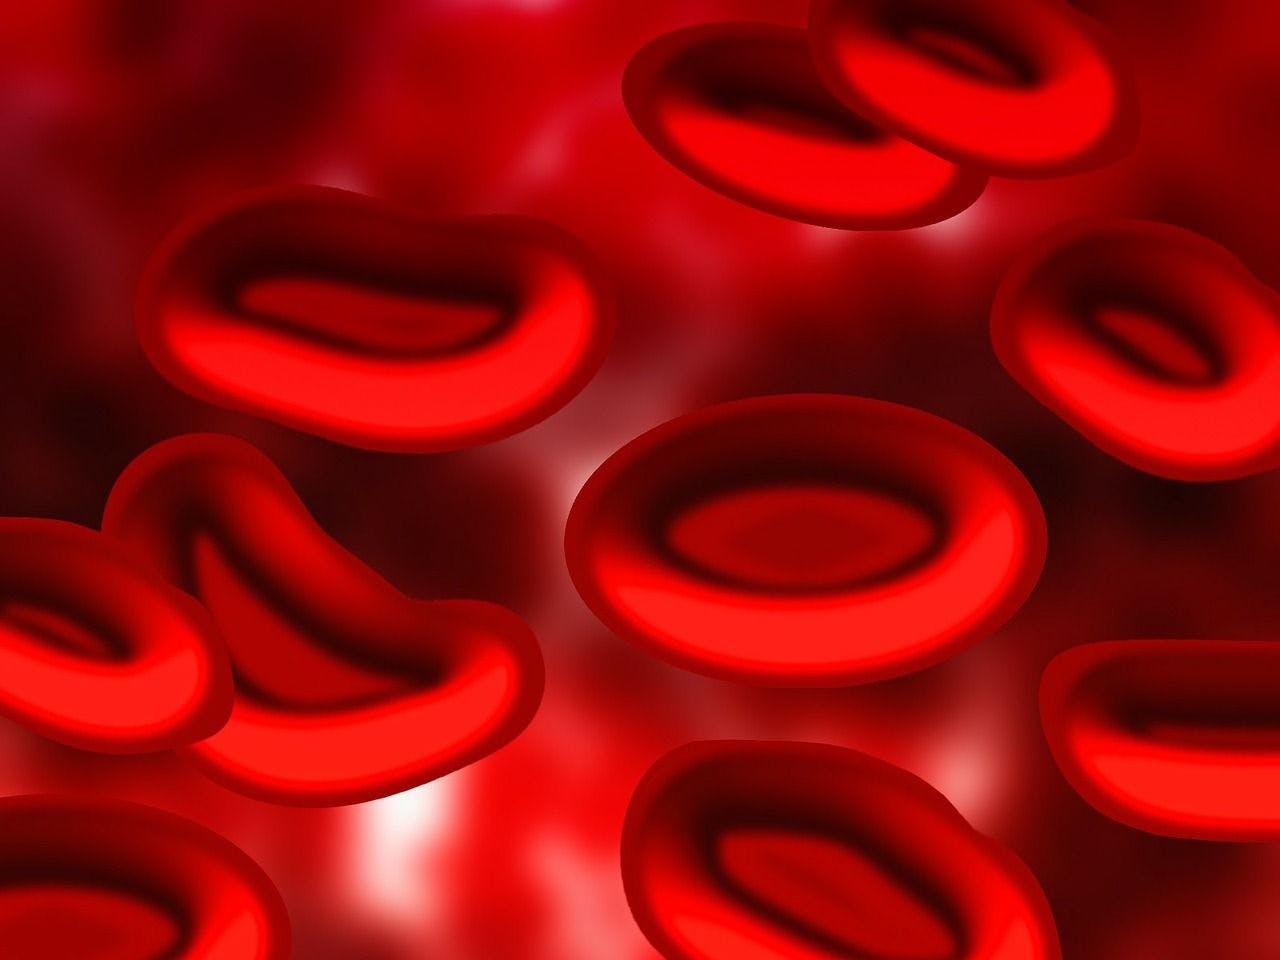 Blood cells | Credit: PixaBay